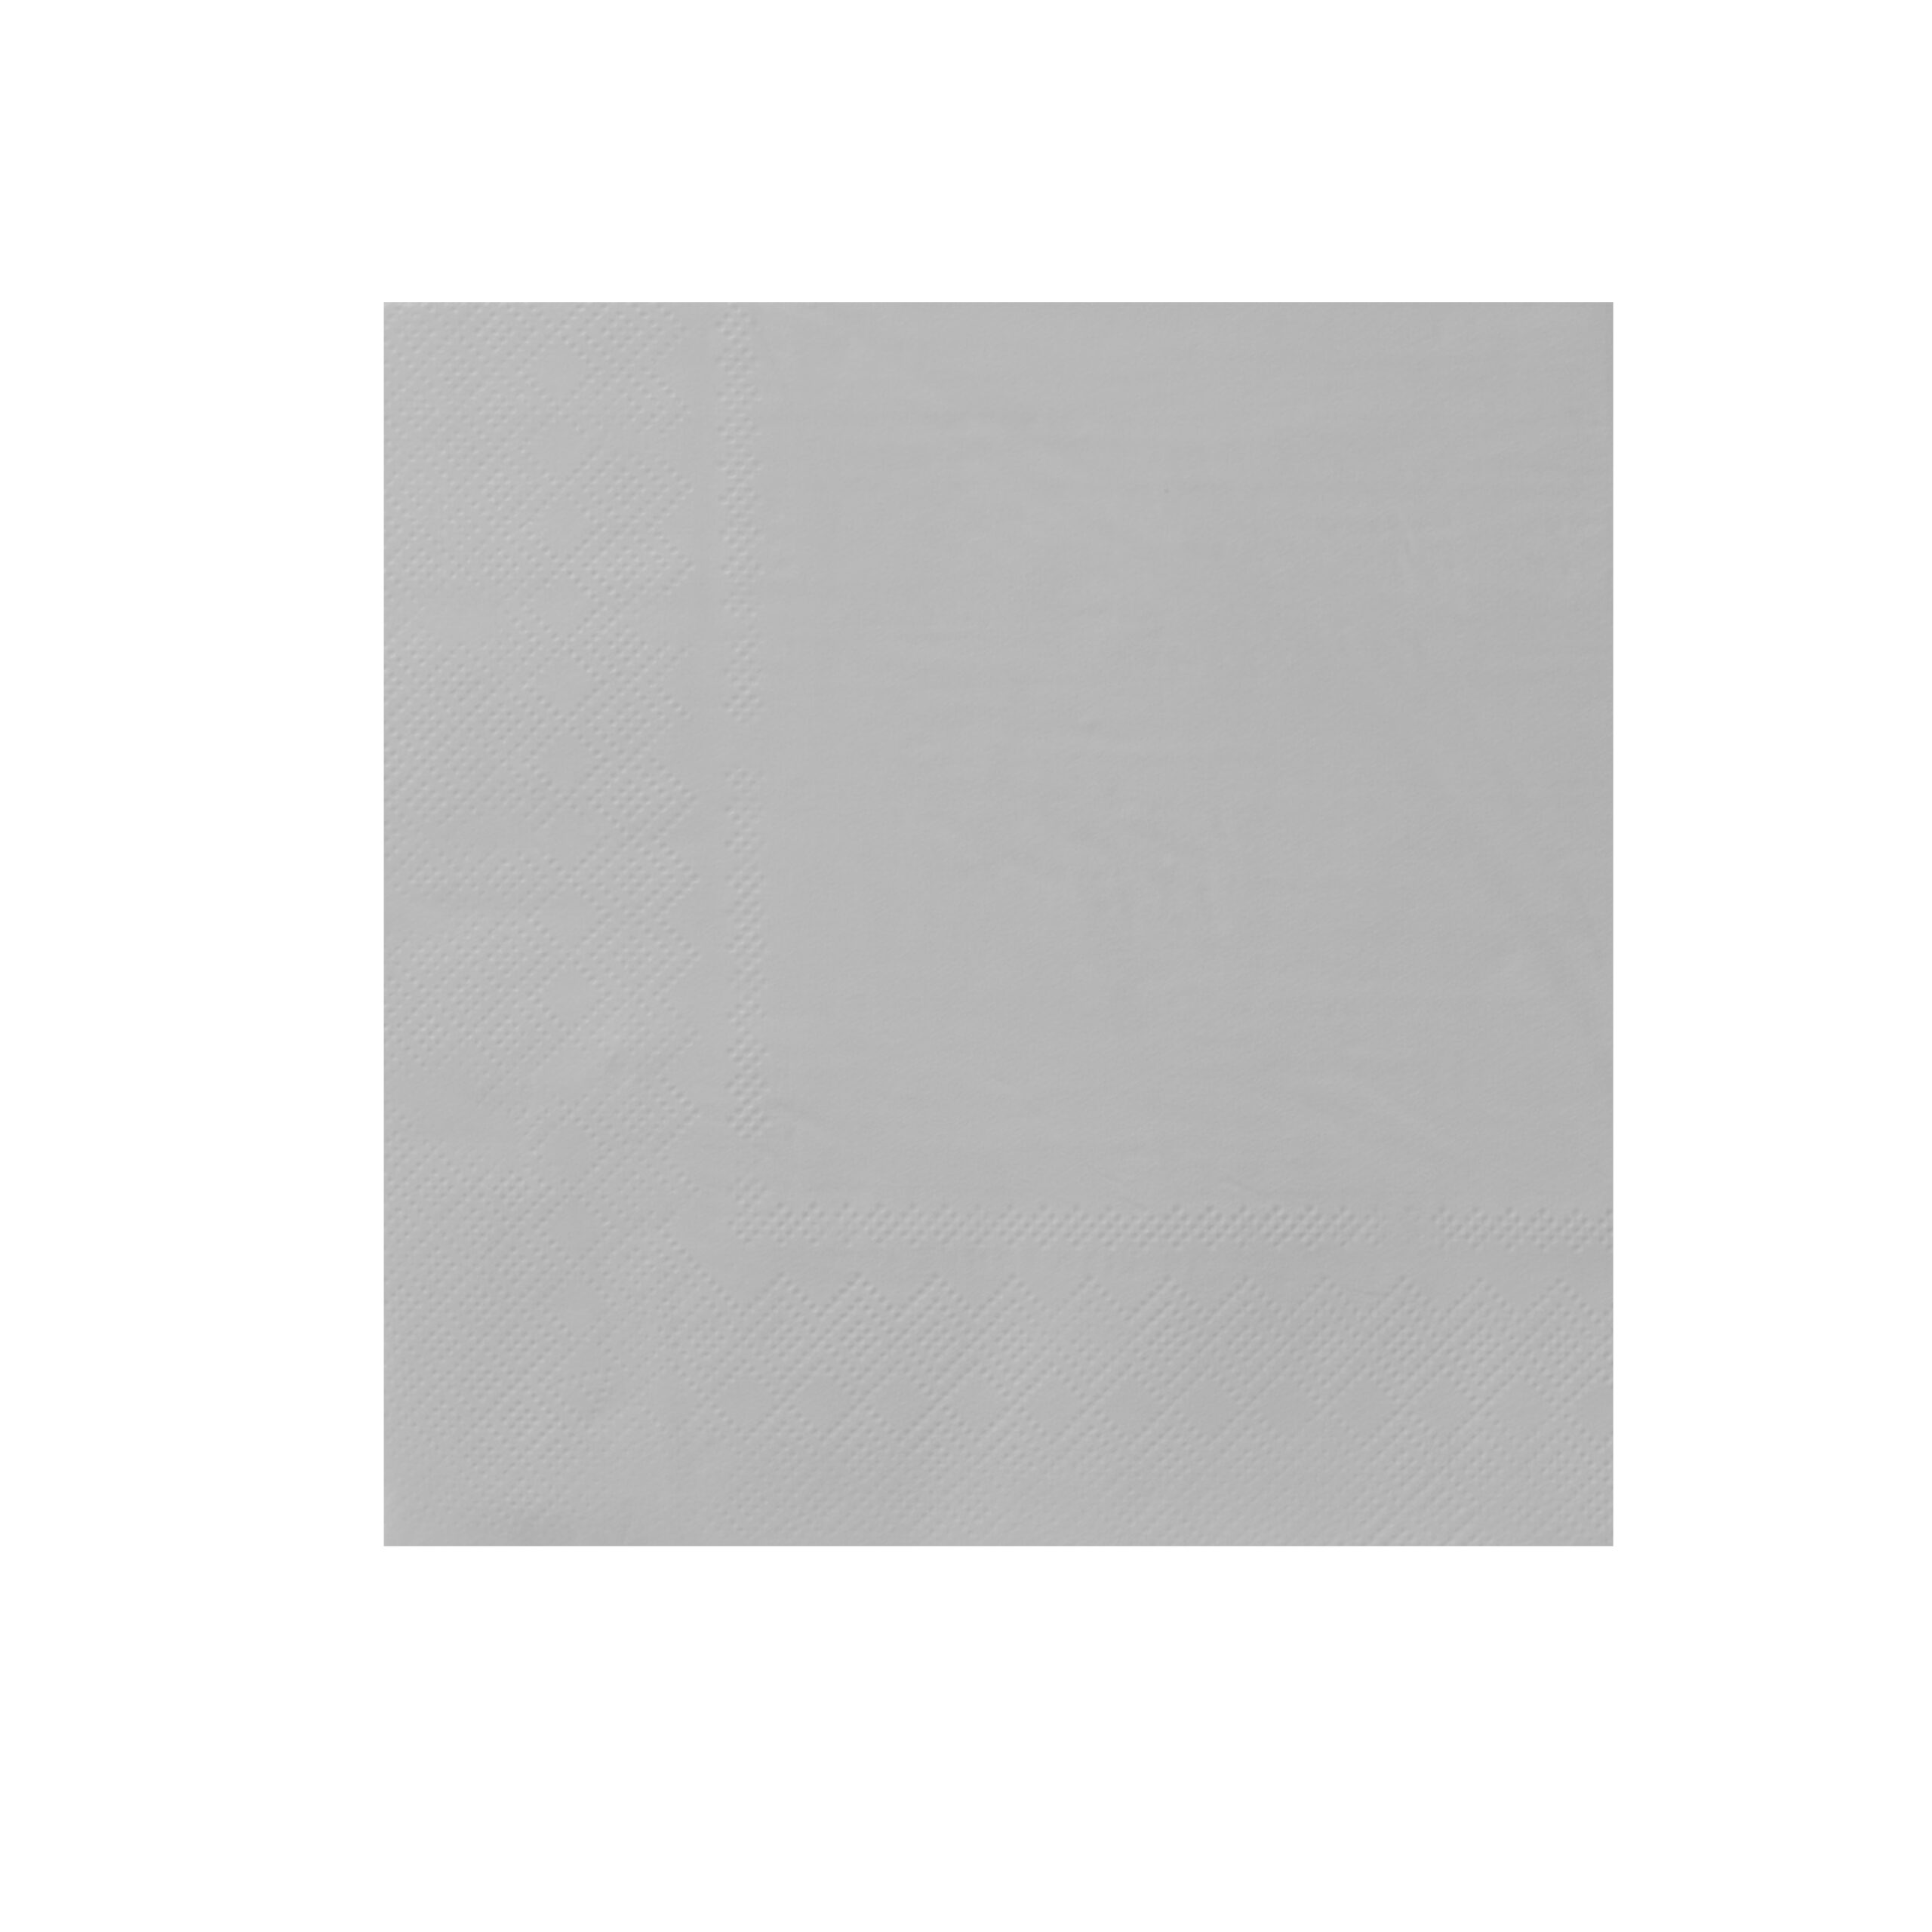 H-SELECT
SERVIETTE
33x33cm 2 PLY
WHITE (1x50)